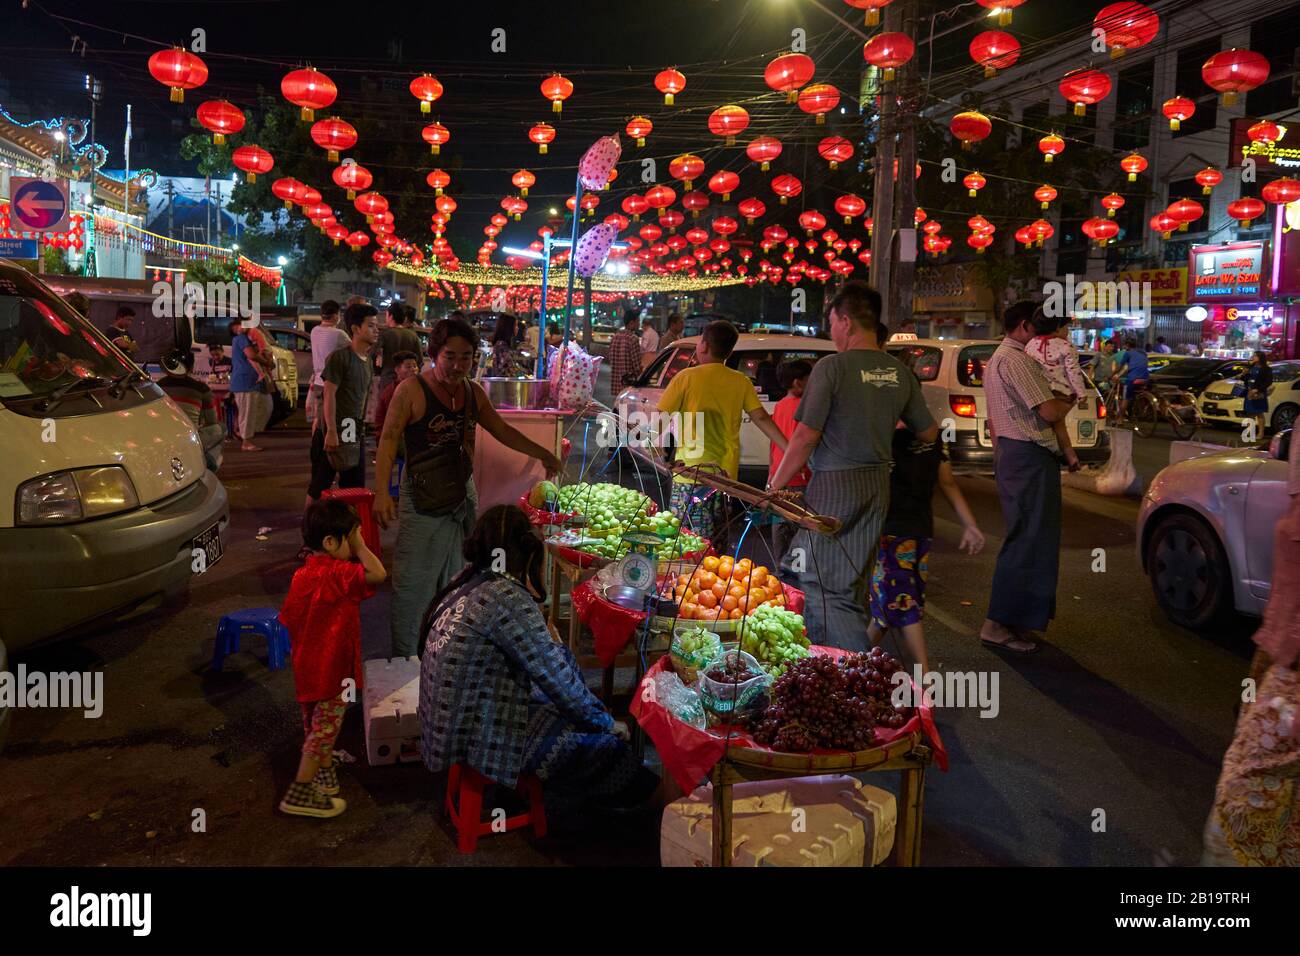 für das chinesische Neujahrsfest mit roten Lampions geschmückte Straße, Obstand, Passanten, chinesisches Viertel, Yangon, Myanmar Foto Stock